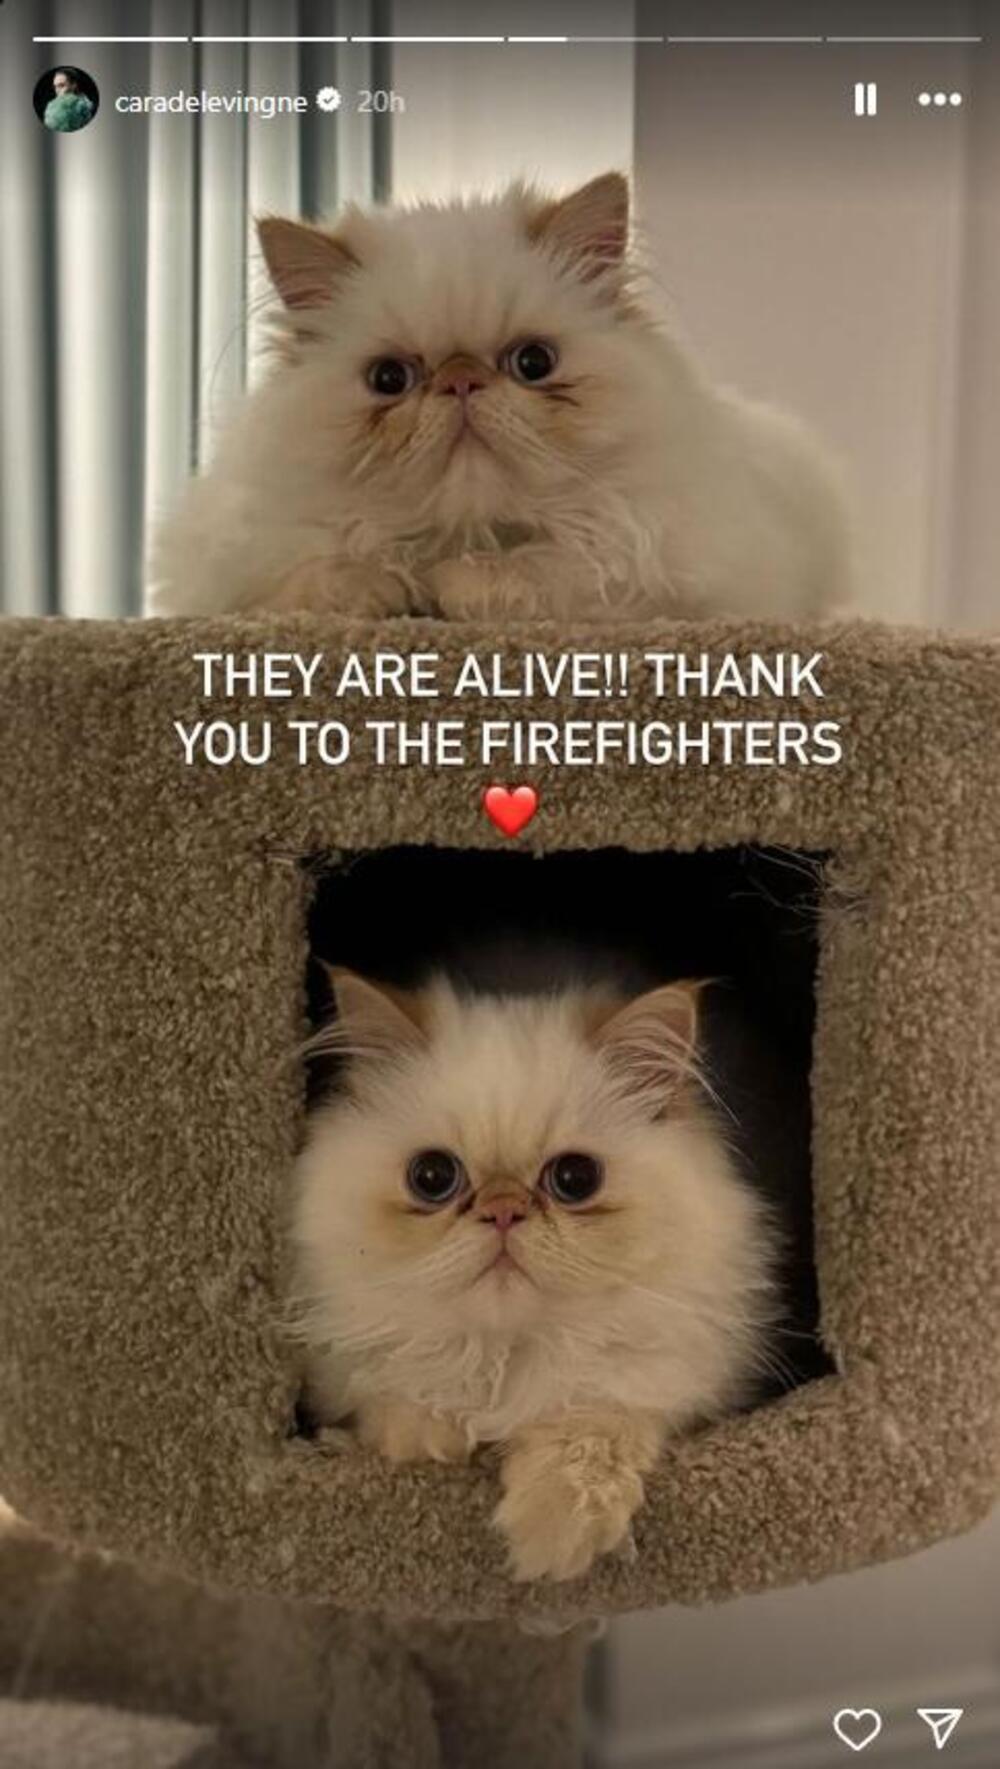 Mačke Kare Delevinj preživele su strašan požar zahvaljujući vatrogascima